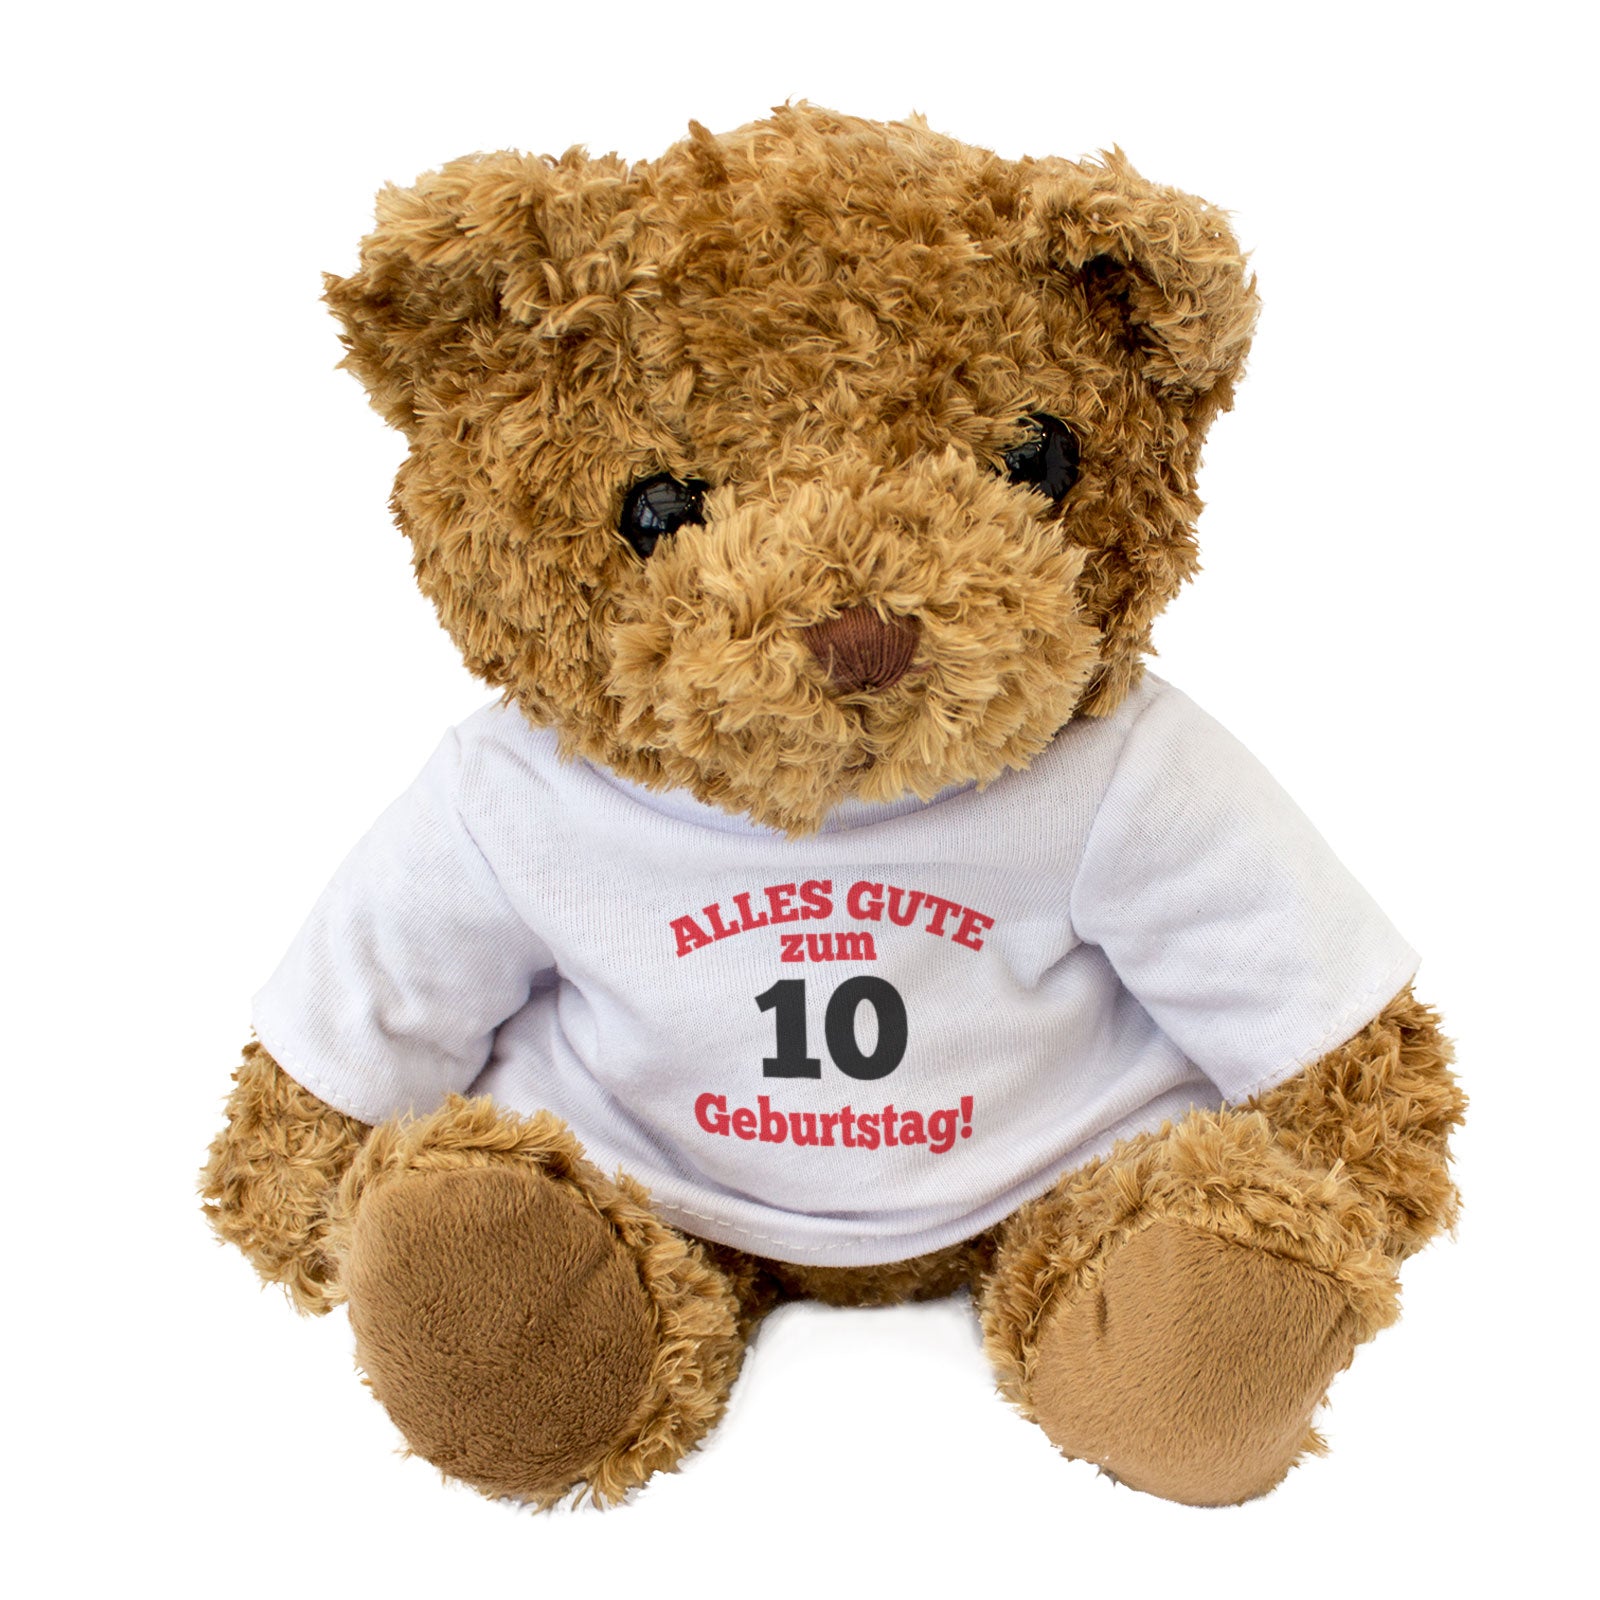 Alles Gute Zum 10 Geburtstag - Teddy Bear - Gift Present